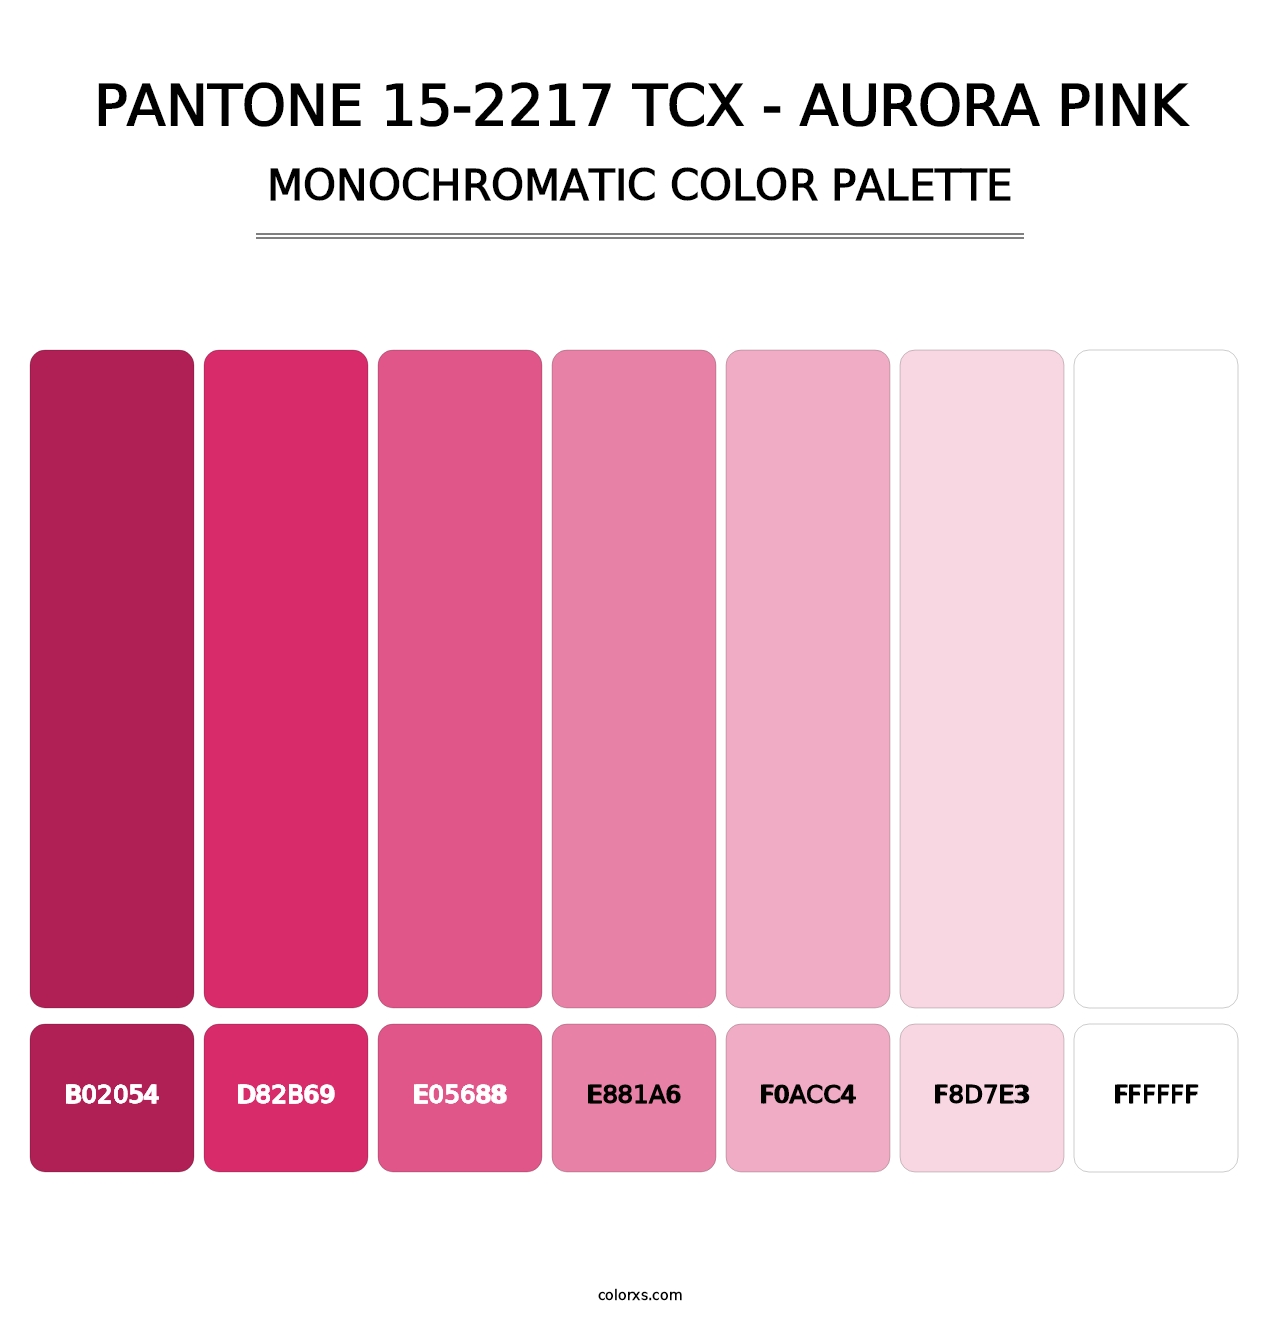 PANTONE 15-2217 TCX - Aurora Pink - Monochromatic Color Palette